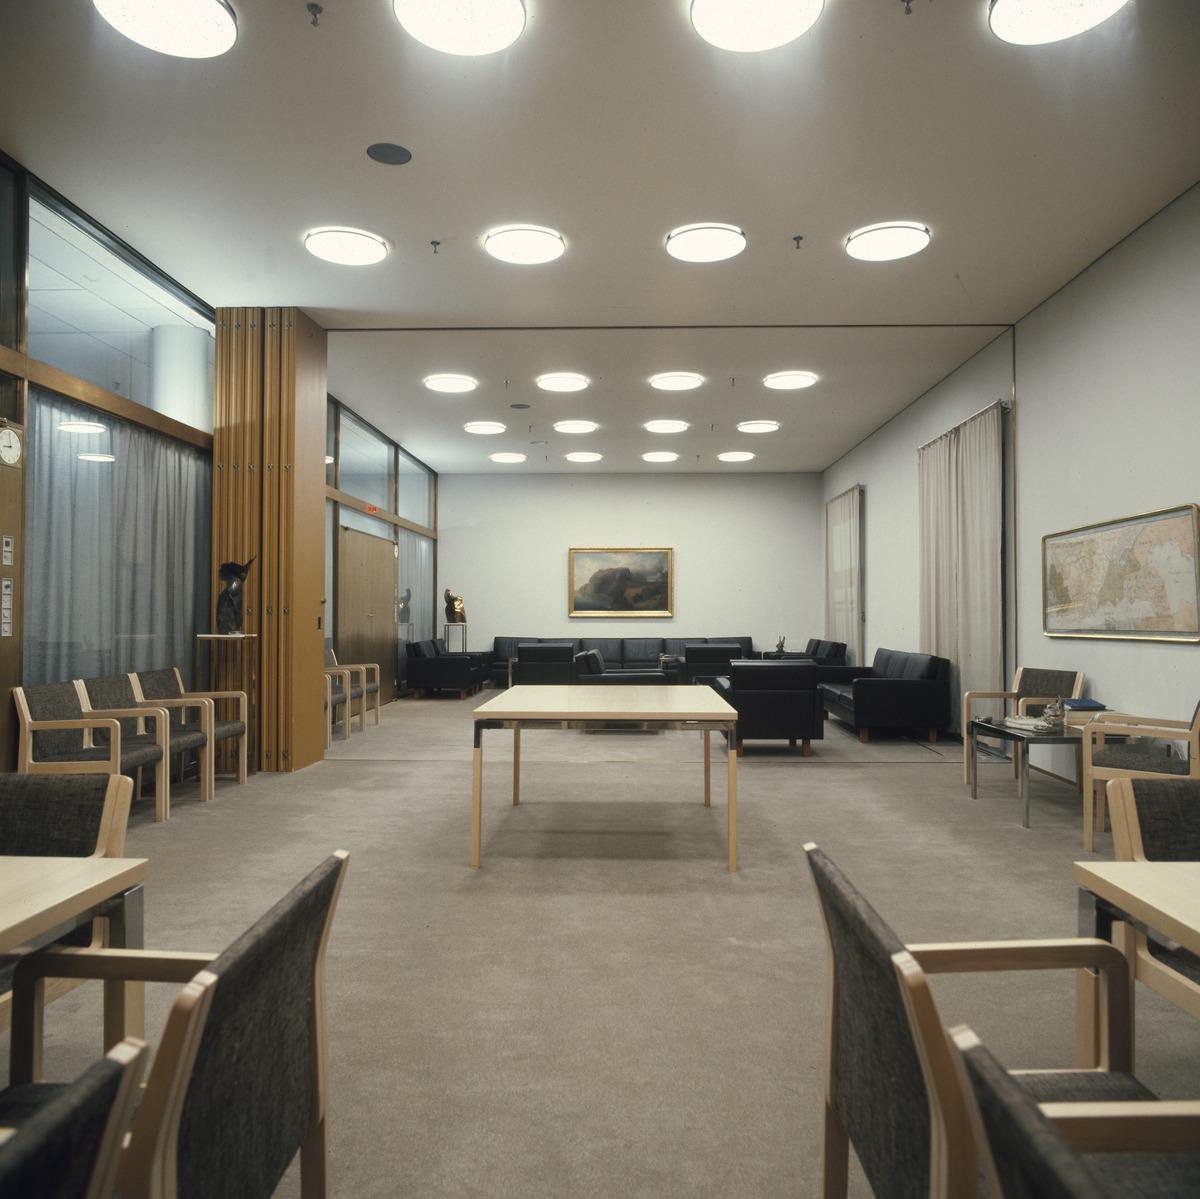 Sisäkuva Helsingin kaupungintalon toimistotiloista. Vaalean huoneen katossa on pyöreitä, kattoon upotettuja valaisimia. Tilassa on pöytiä ja tumma sohvaryhmä sekä lasiseinä käytävälle.